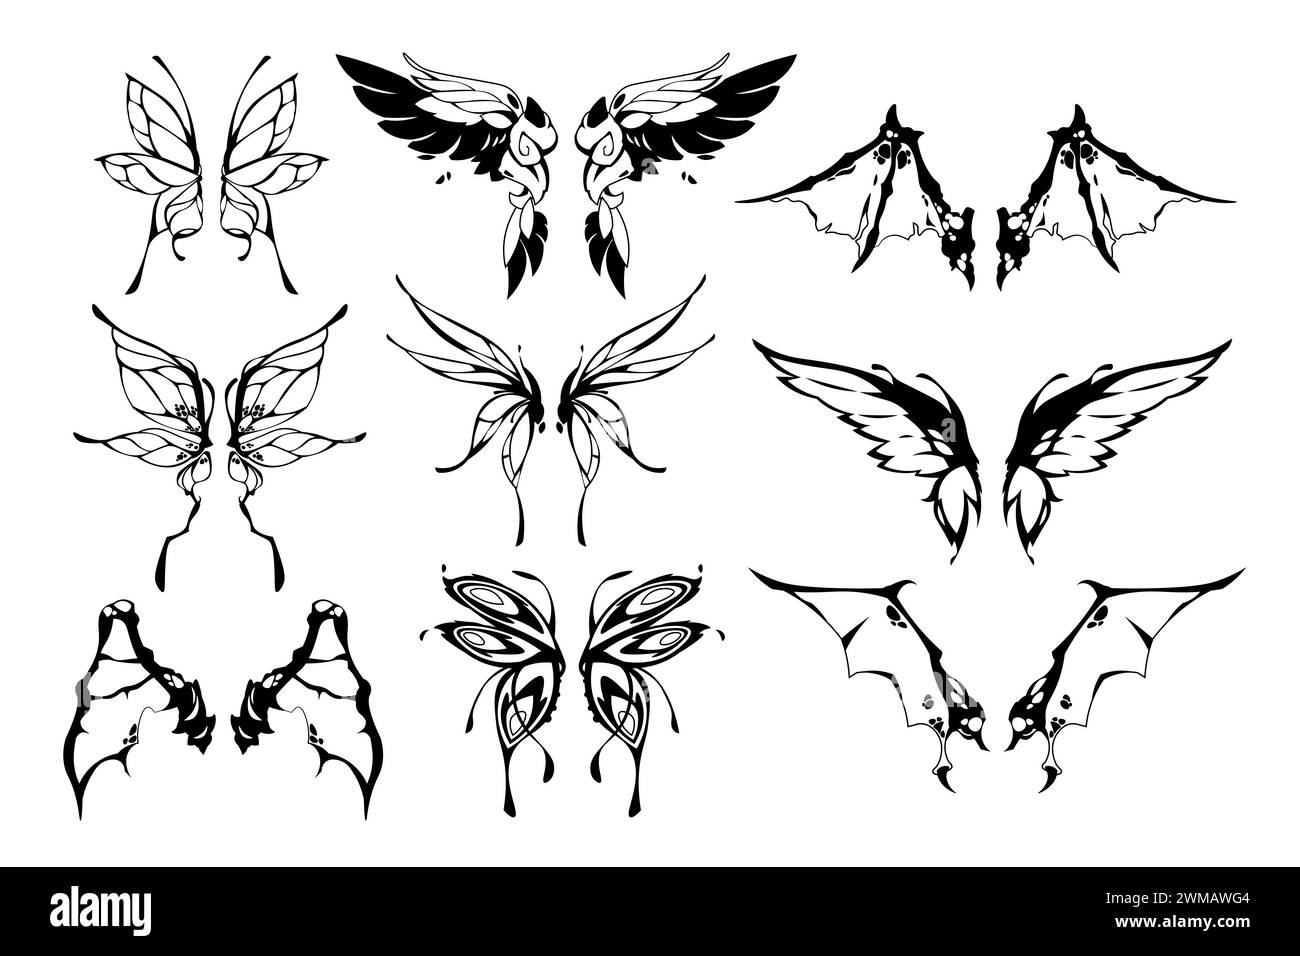 Tatouage d'ailes de fée. Silhouettes mignonnes de papillon et d'aile de papillon, parties du corps de créature ailée magique fantastique pour la conception de tatouage. Ensemble isolé de vecteur Illustration de Vecteur